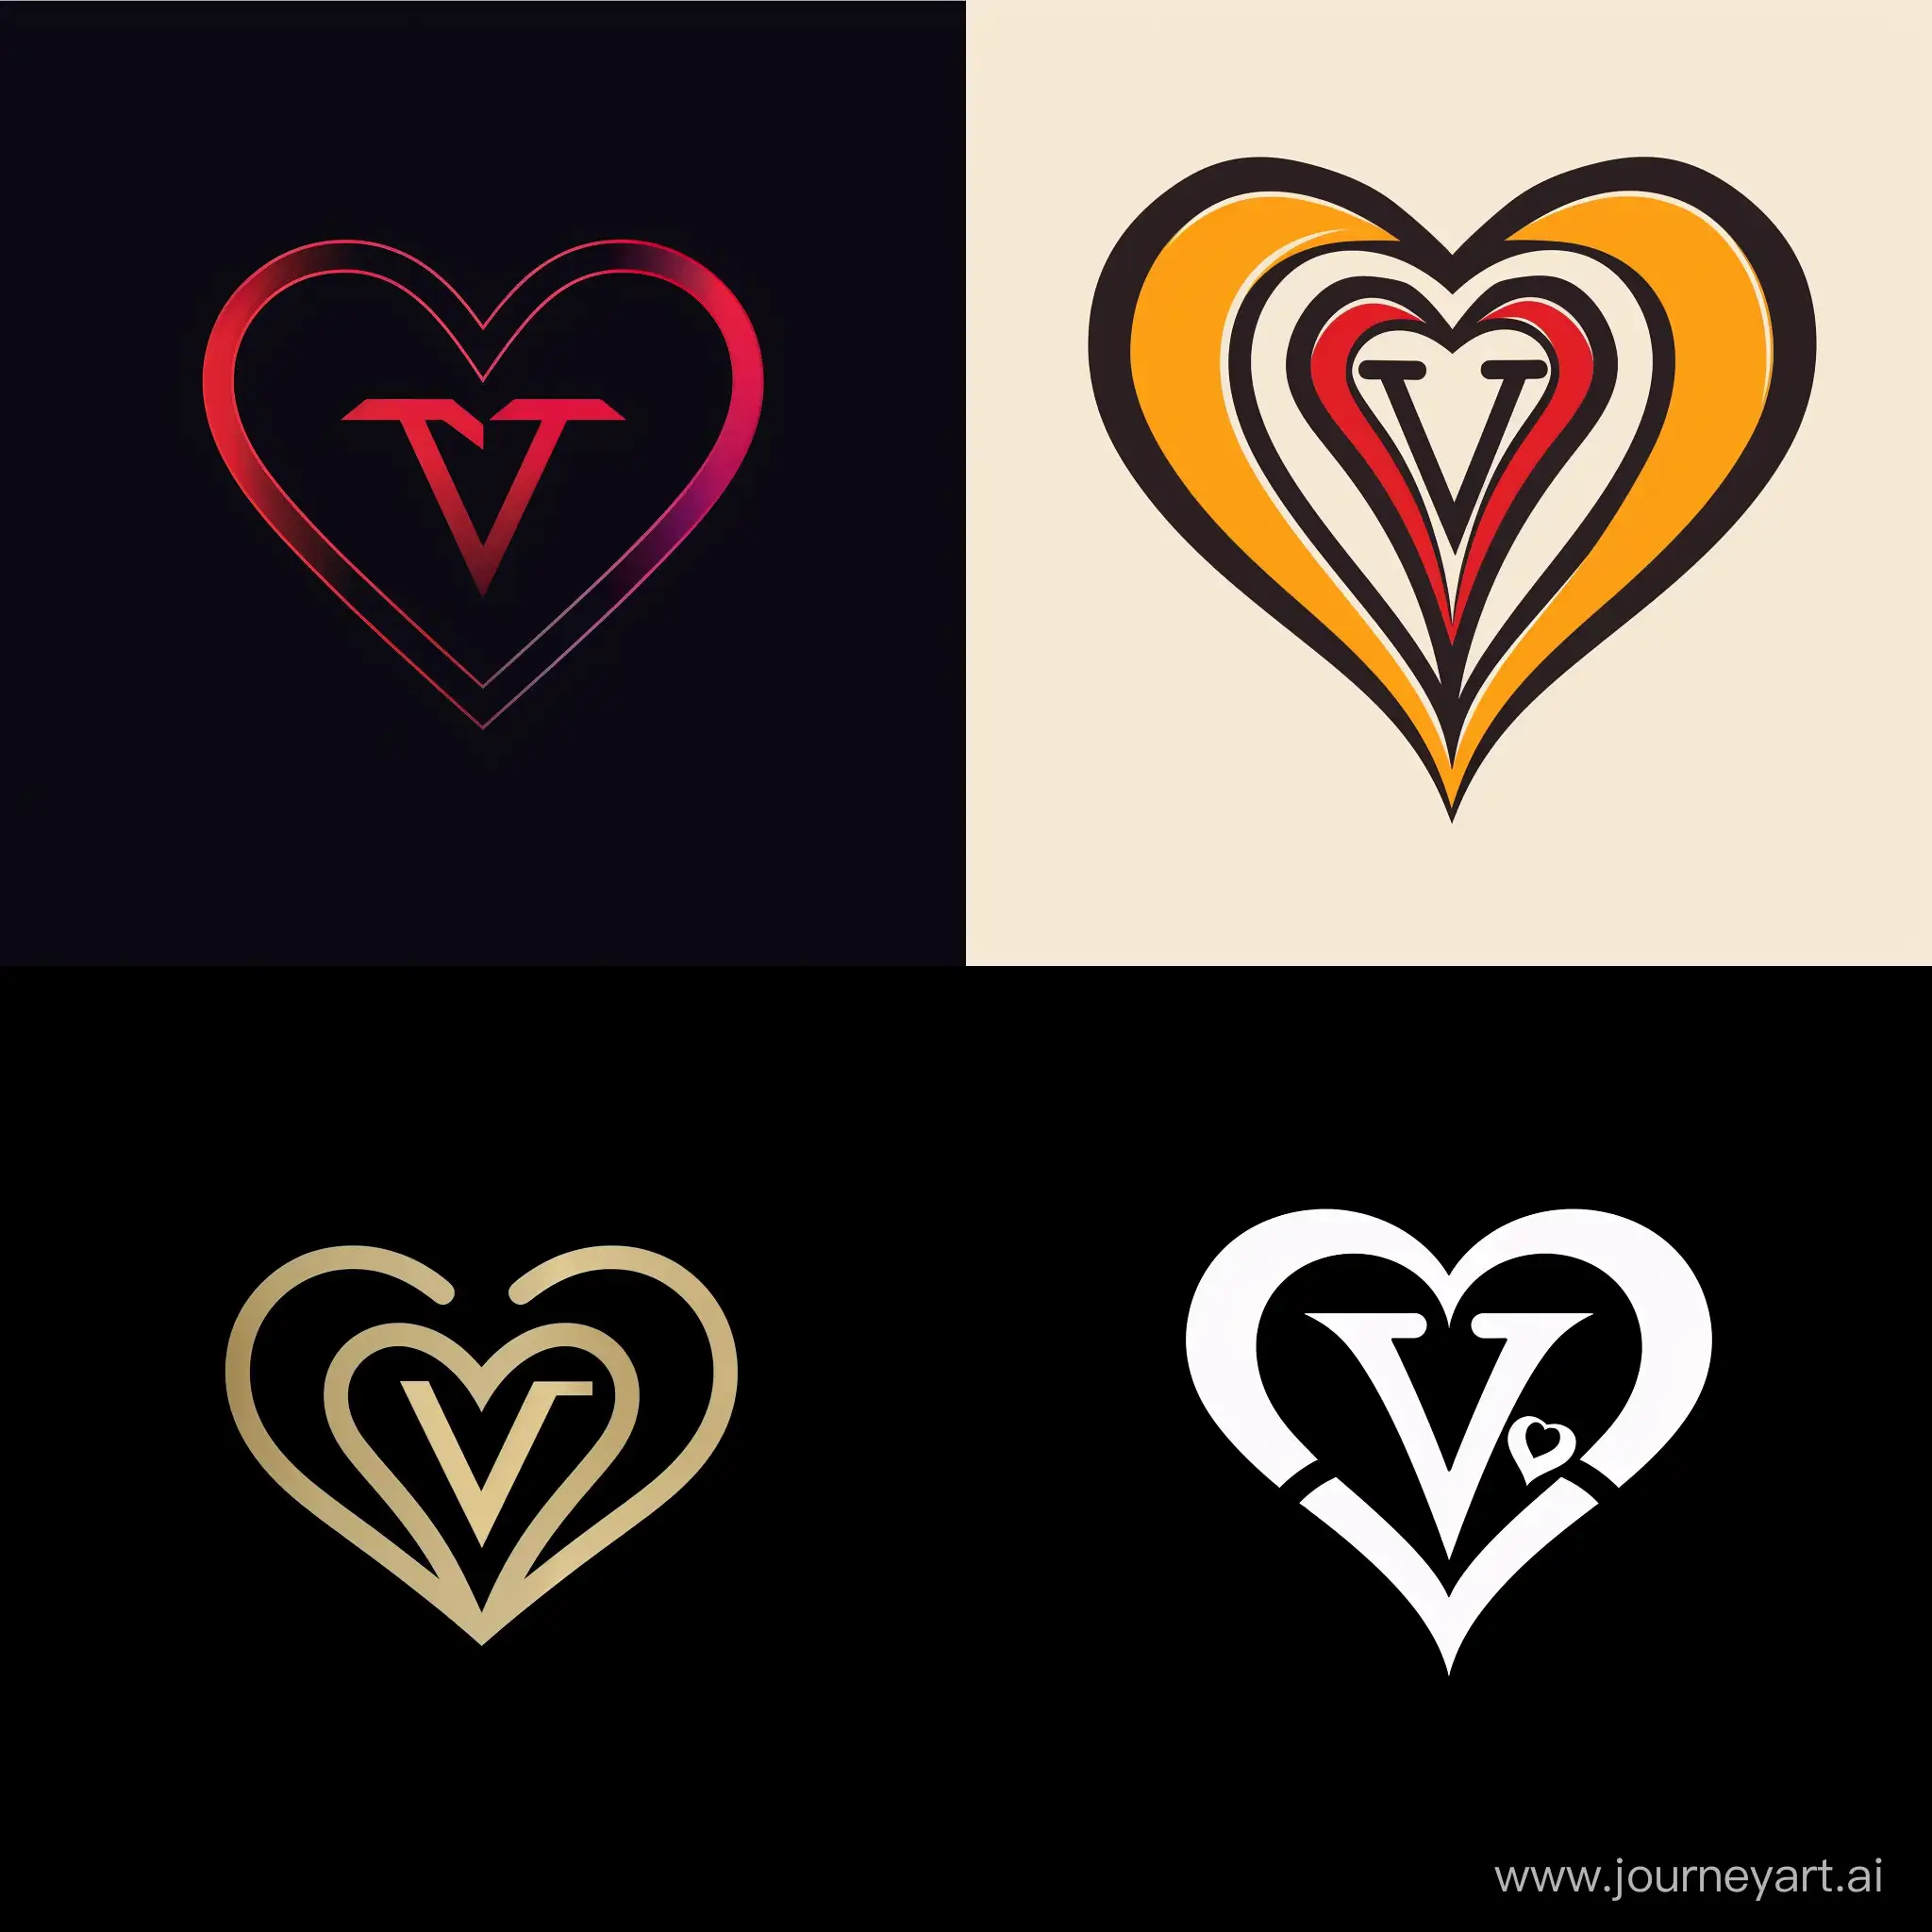 Bir kalp içerisinde V ve T harflerinden oluşan bir logo tasarlar mısın?